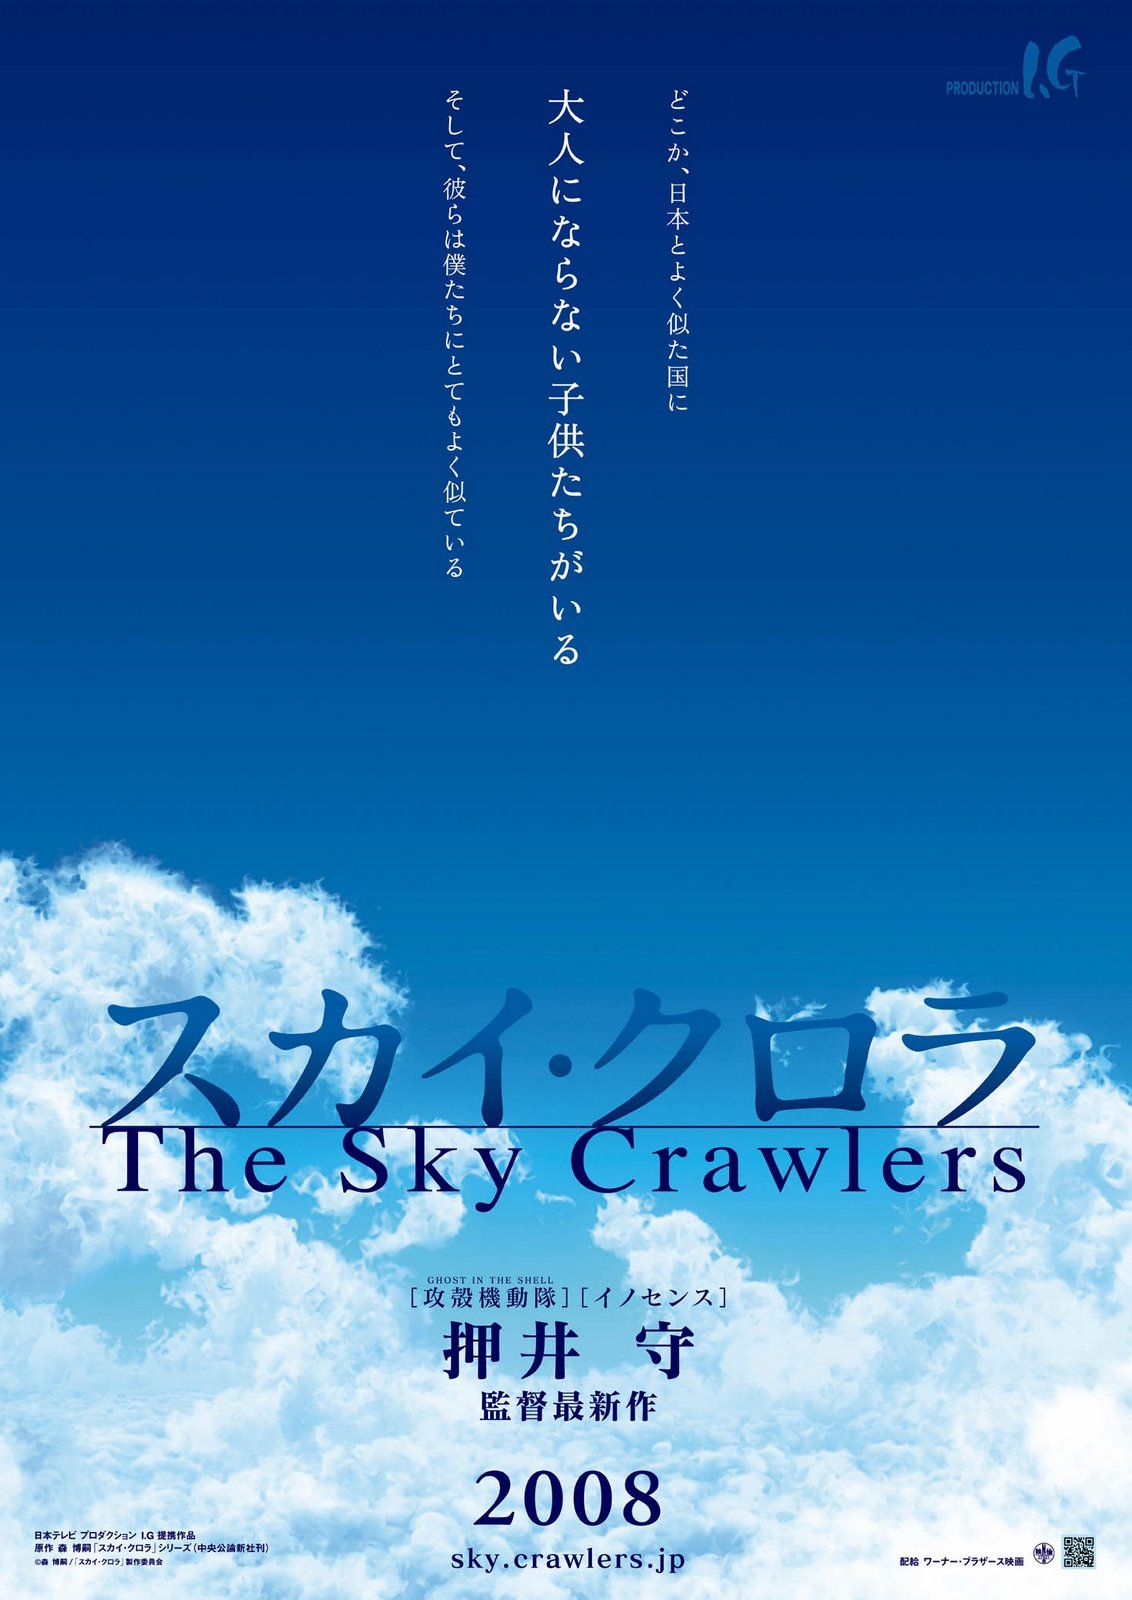 The Sky Crawlers movie image (1).jpg